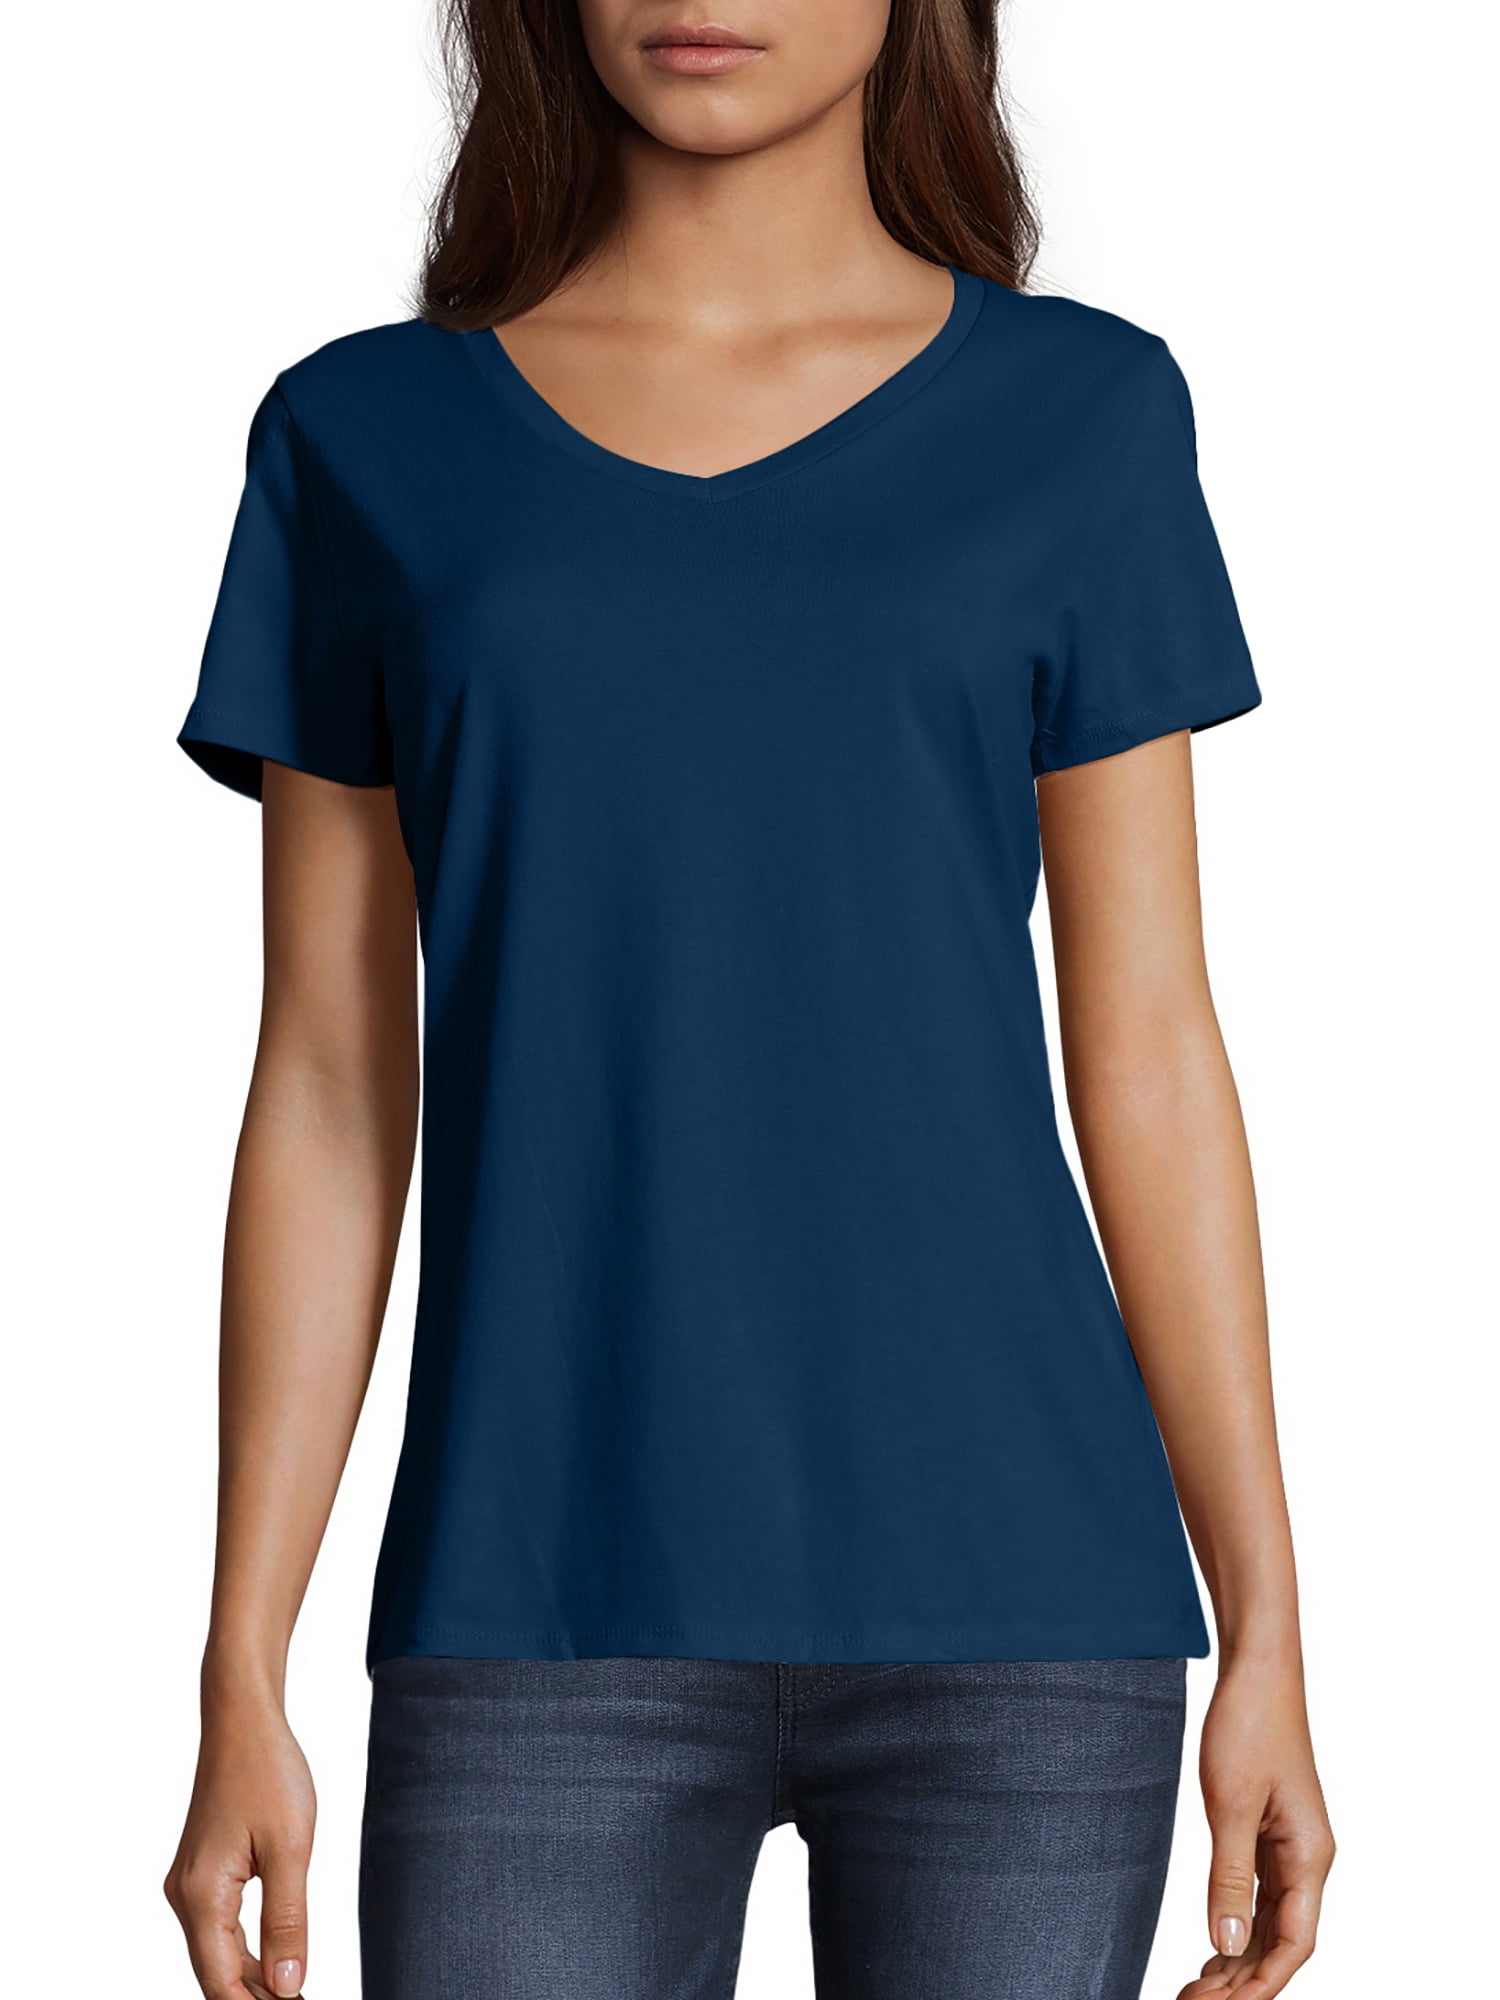 Hanes Women's Nano-T V-Neck T-Shirt - Walmart.com